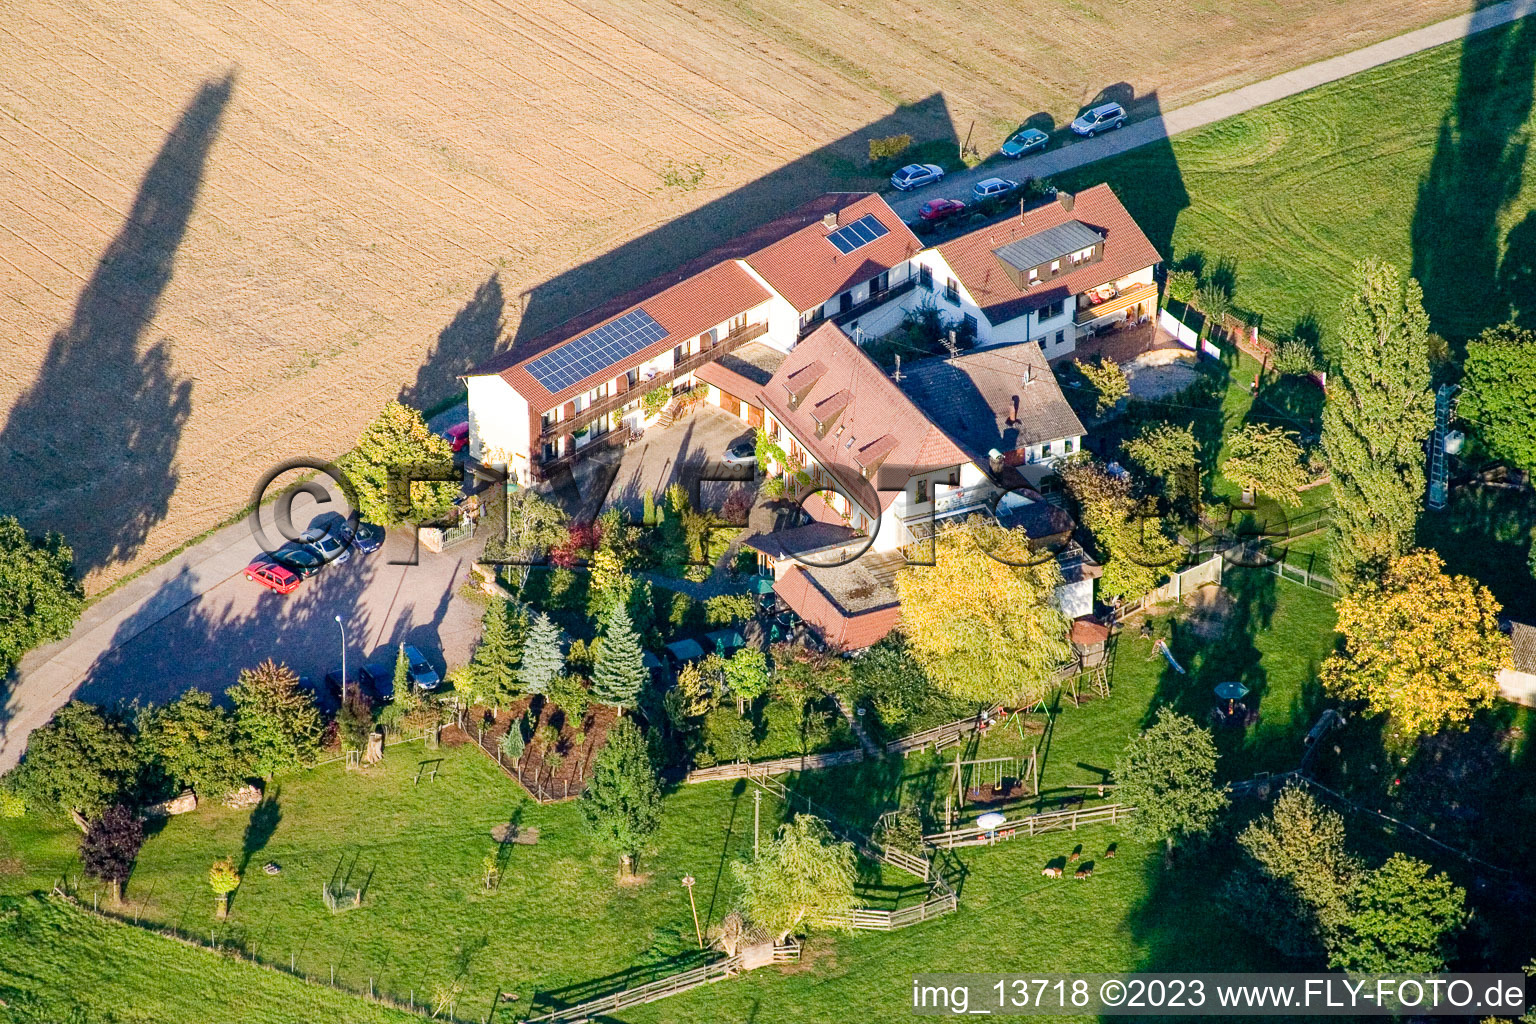 Guesthouse Obermühle in the district Heuchelheim in Heuchelheim-Klingen in the state Rhineland-Palatinate, Germany